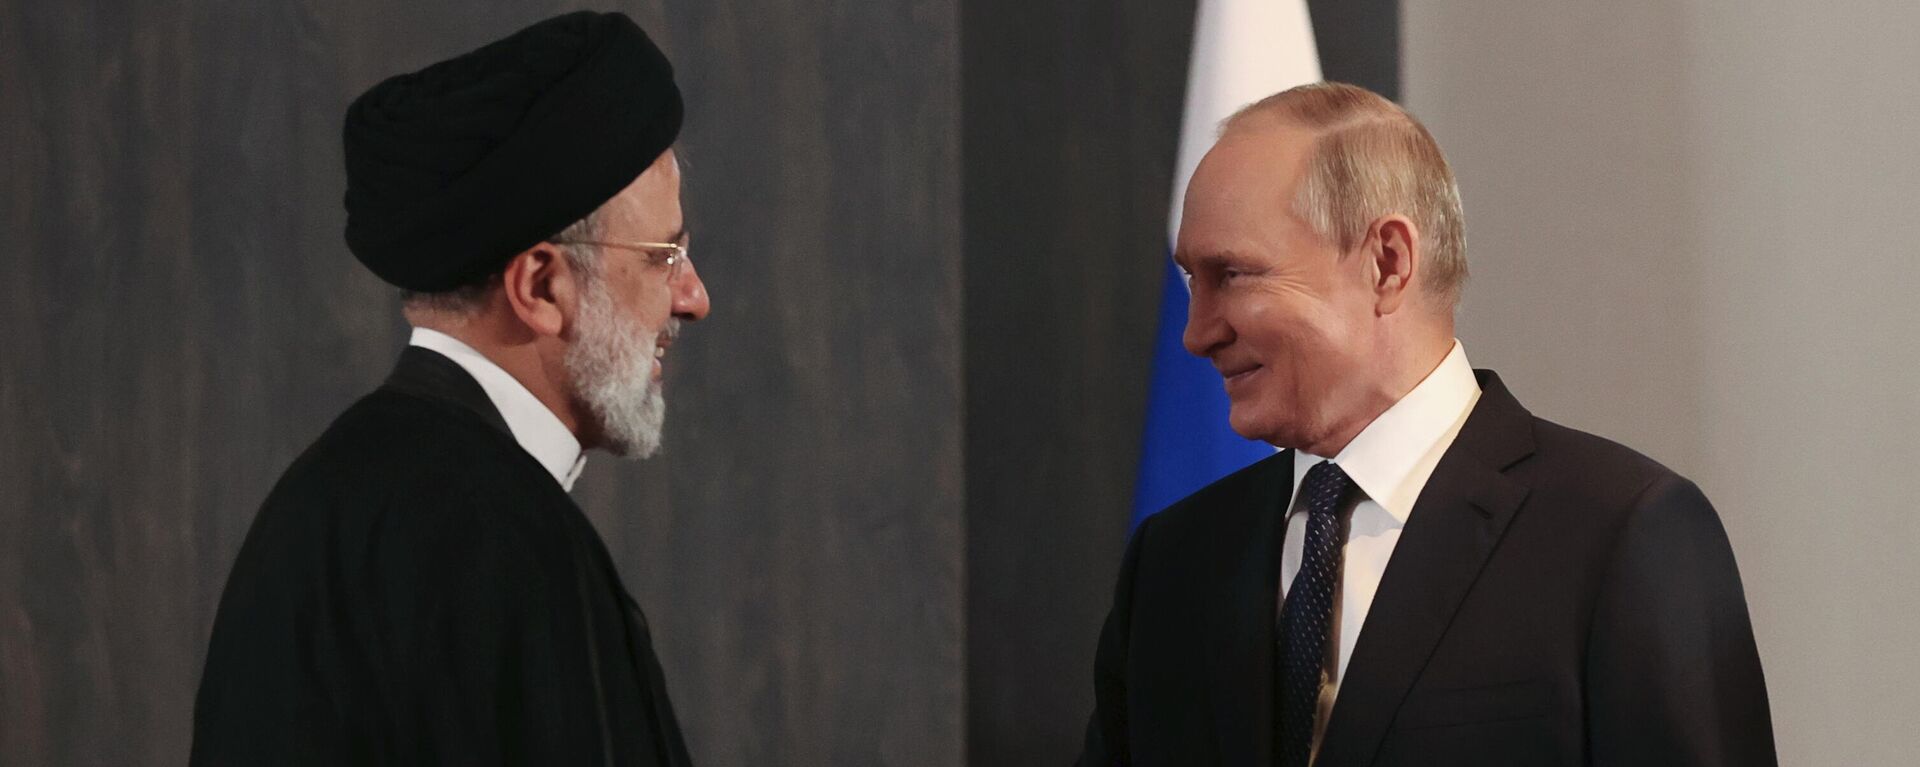 Predesdnik Rusije Vladimir Putin i predsednik Irana Ibrahim Raisi, ŠOS, Samarkande 2022 - Sputnik Srbija, 1920, 15.09.2022